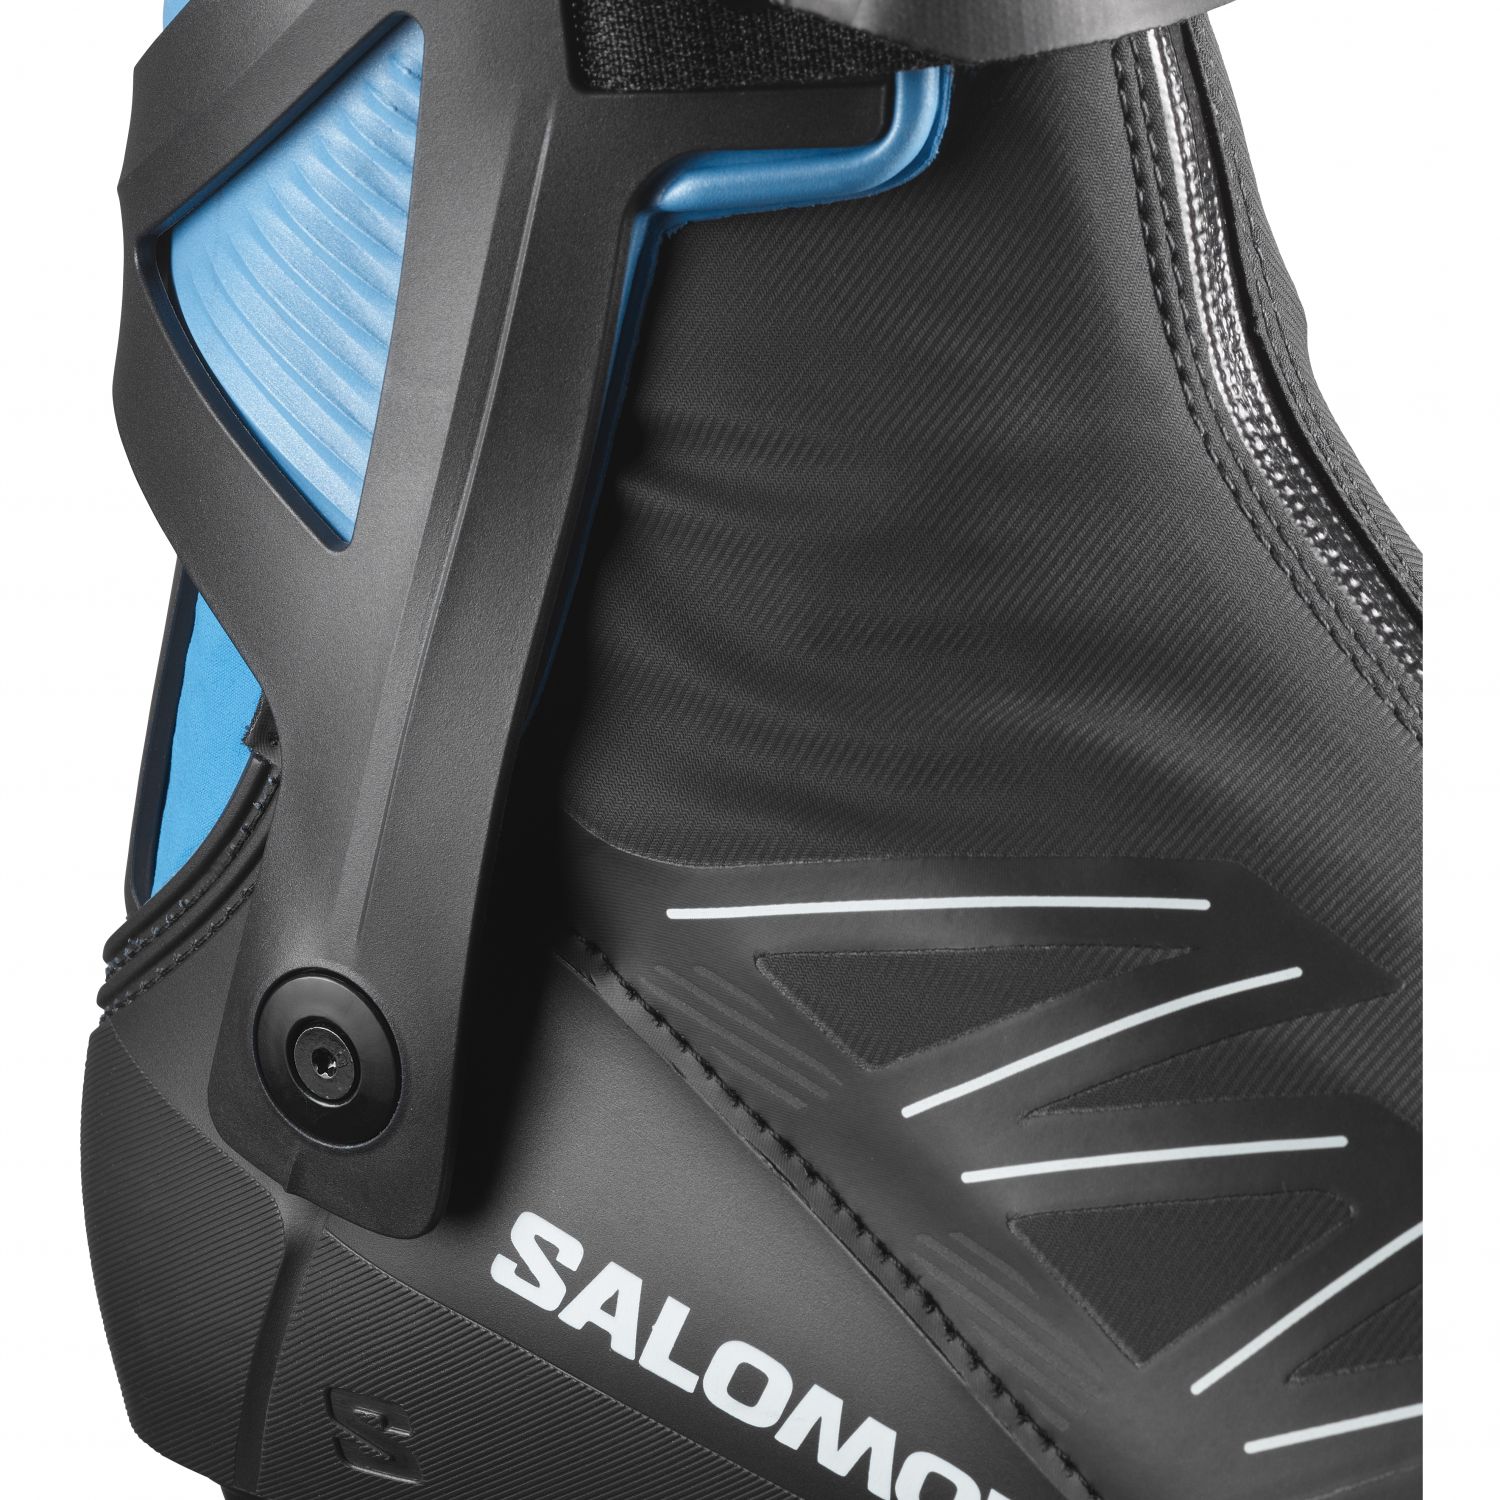 Salomon RS8 Prolink, Langlaufschuhe, Herren, dunkelblau